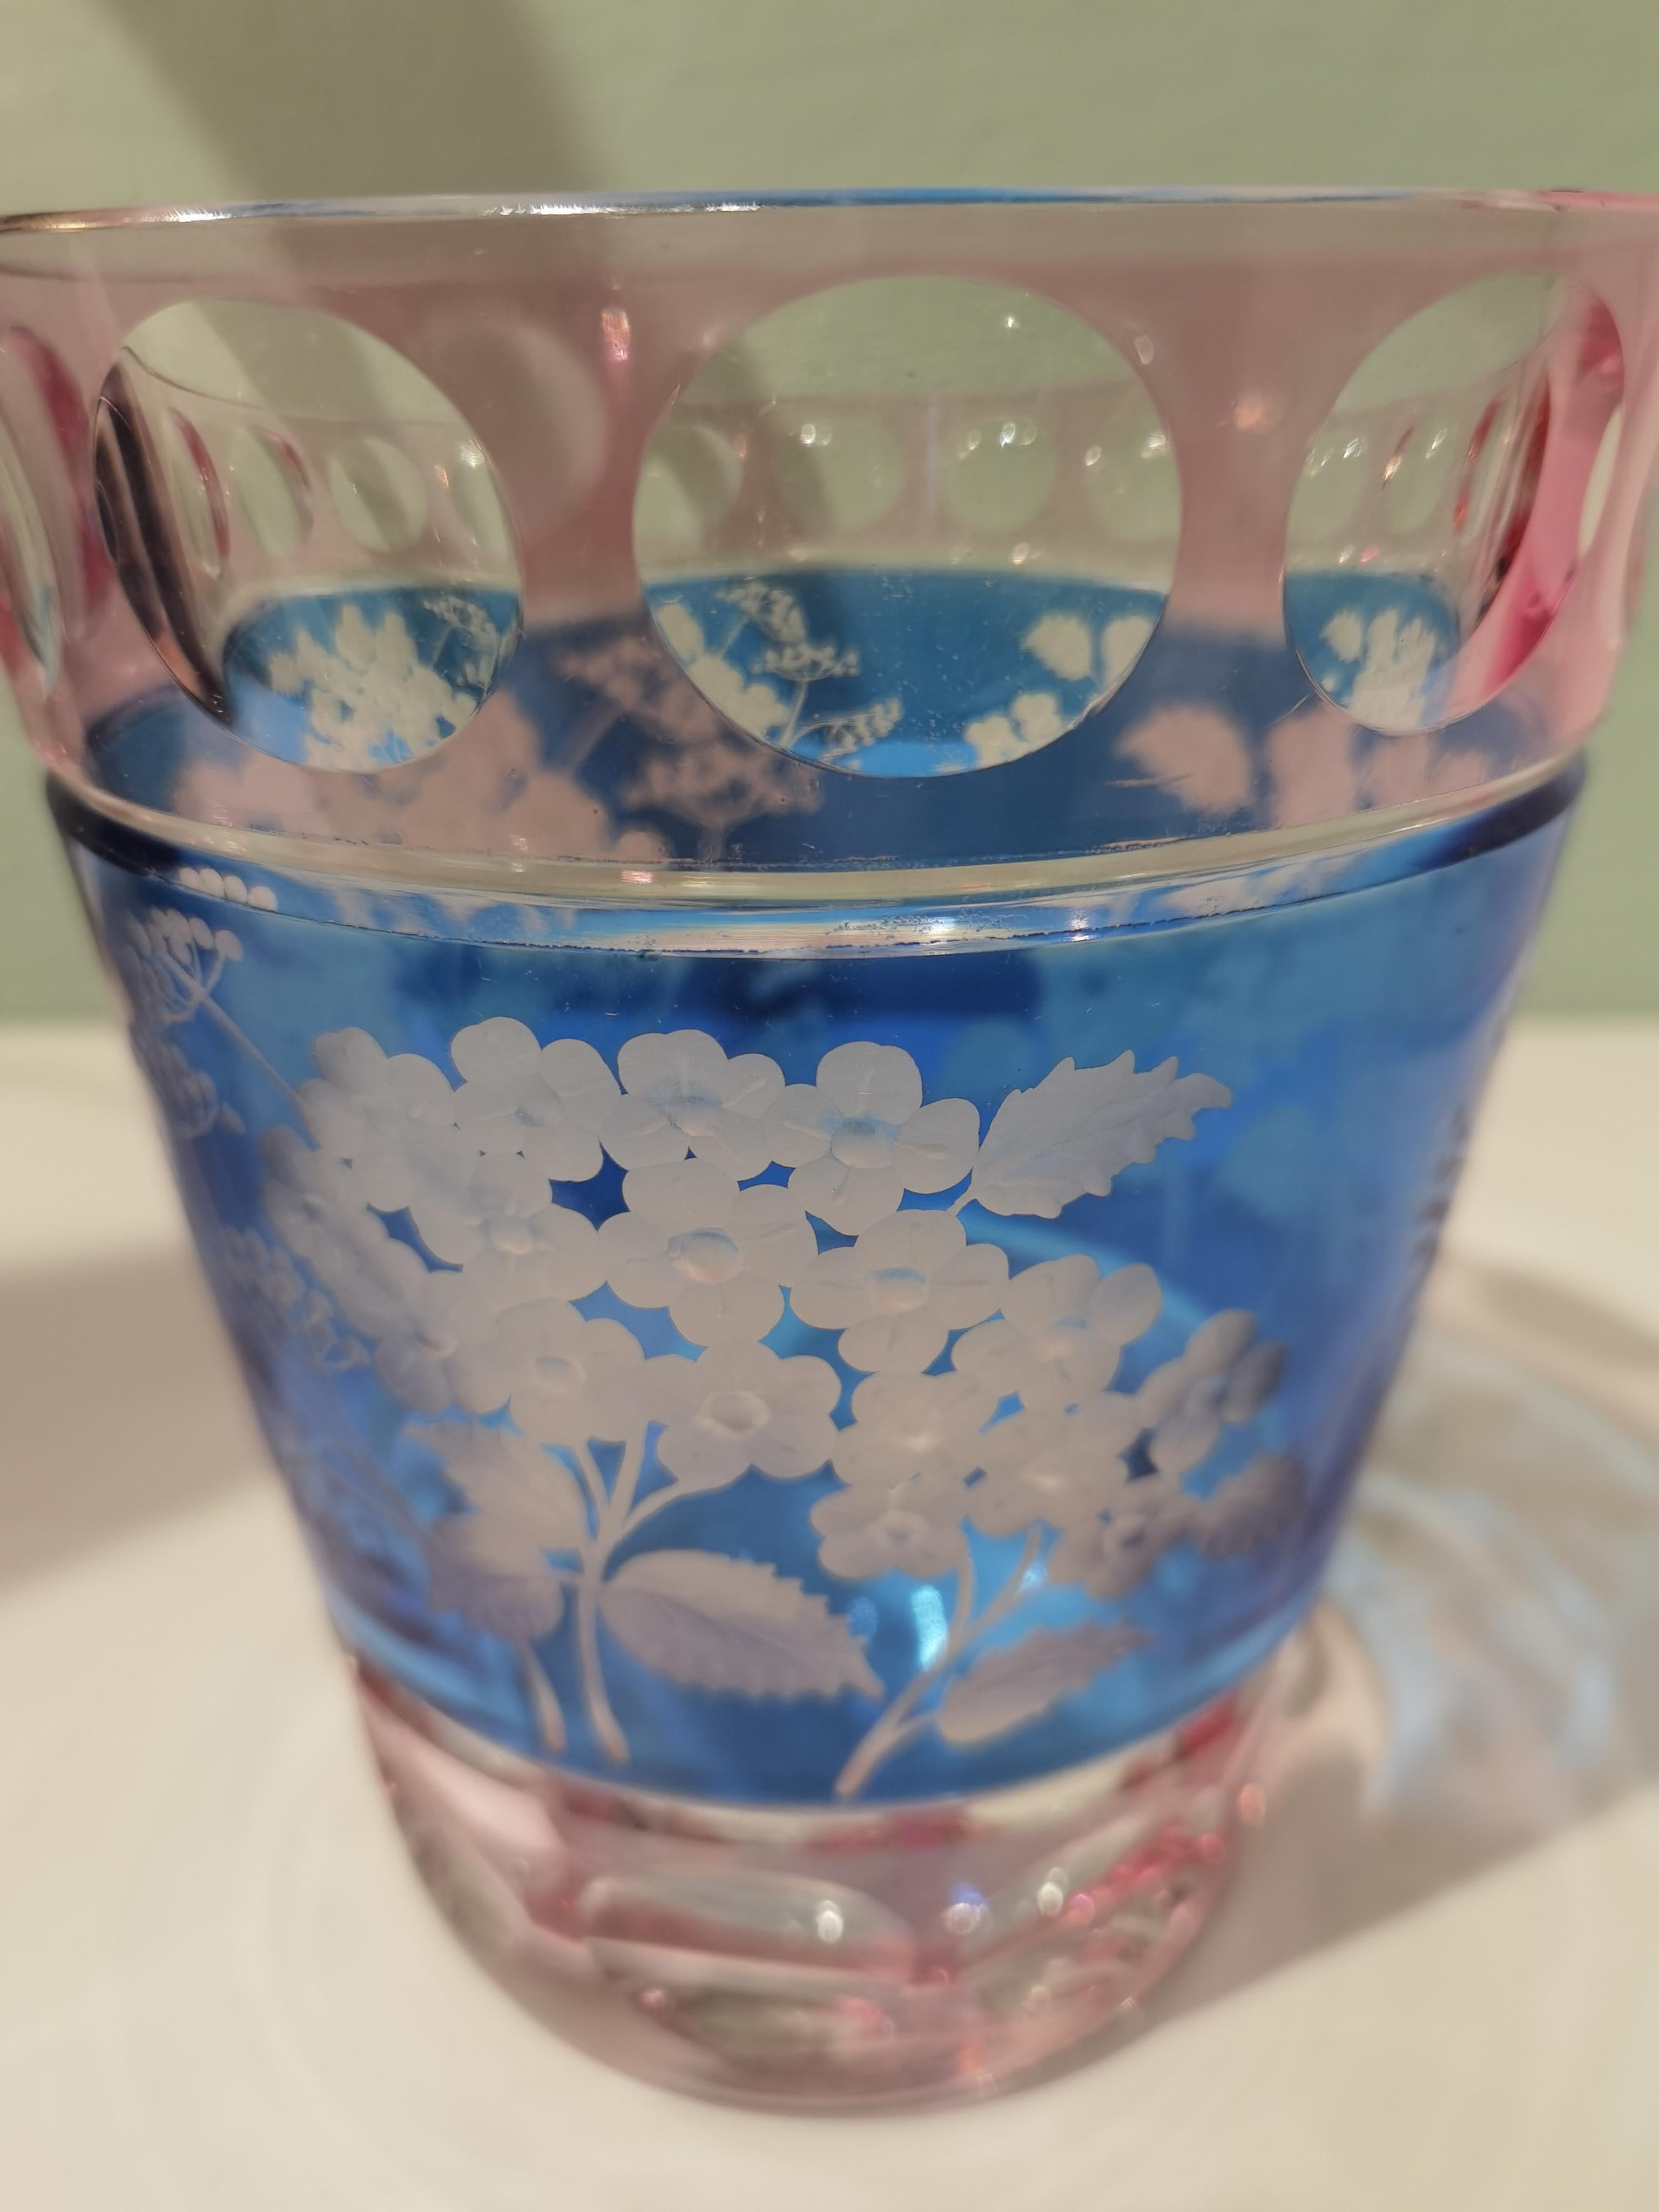 Vase aus mundgeblasenem Kristall in zartrosa und blauem Kristall mit einem Blumendekor im Landhausstil rundherum. Das Dekor zeigt Hortensienblüten im naturalistischen Stil. Vollständig mundgeblasen und handgraviert in Bayern/Deutschland. Das hier